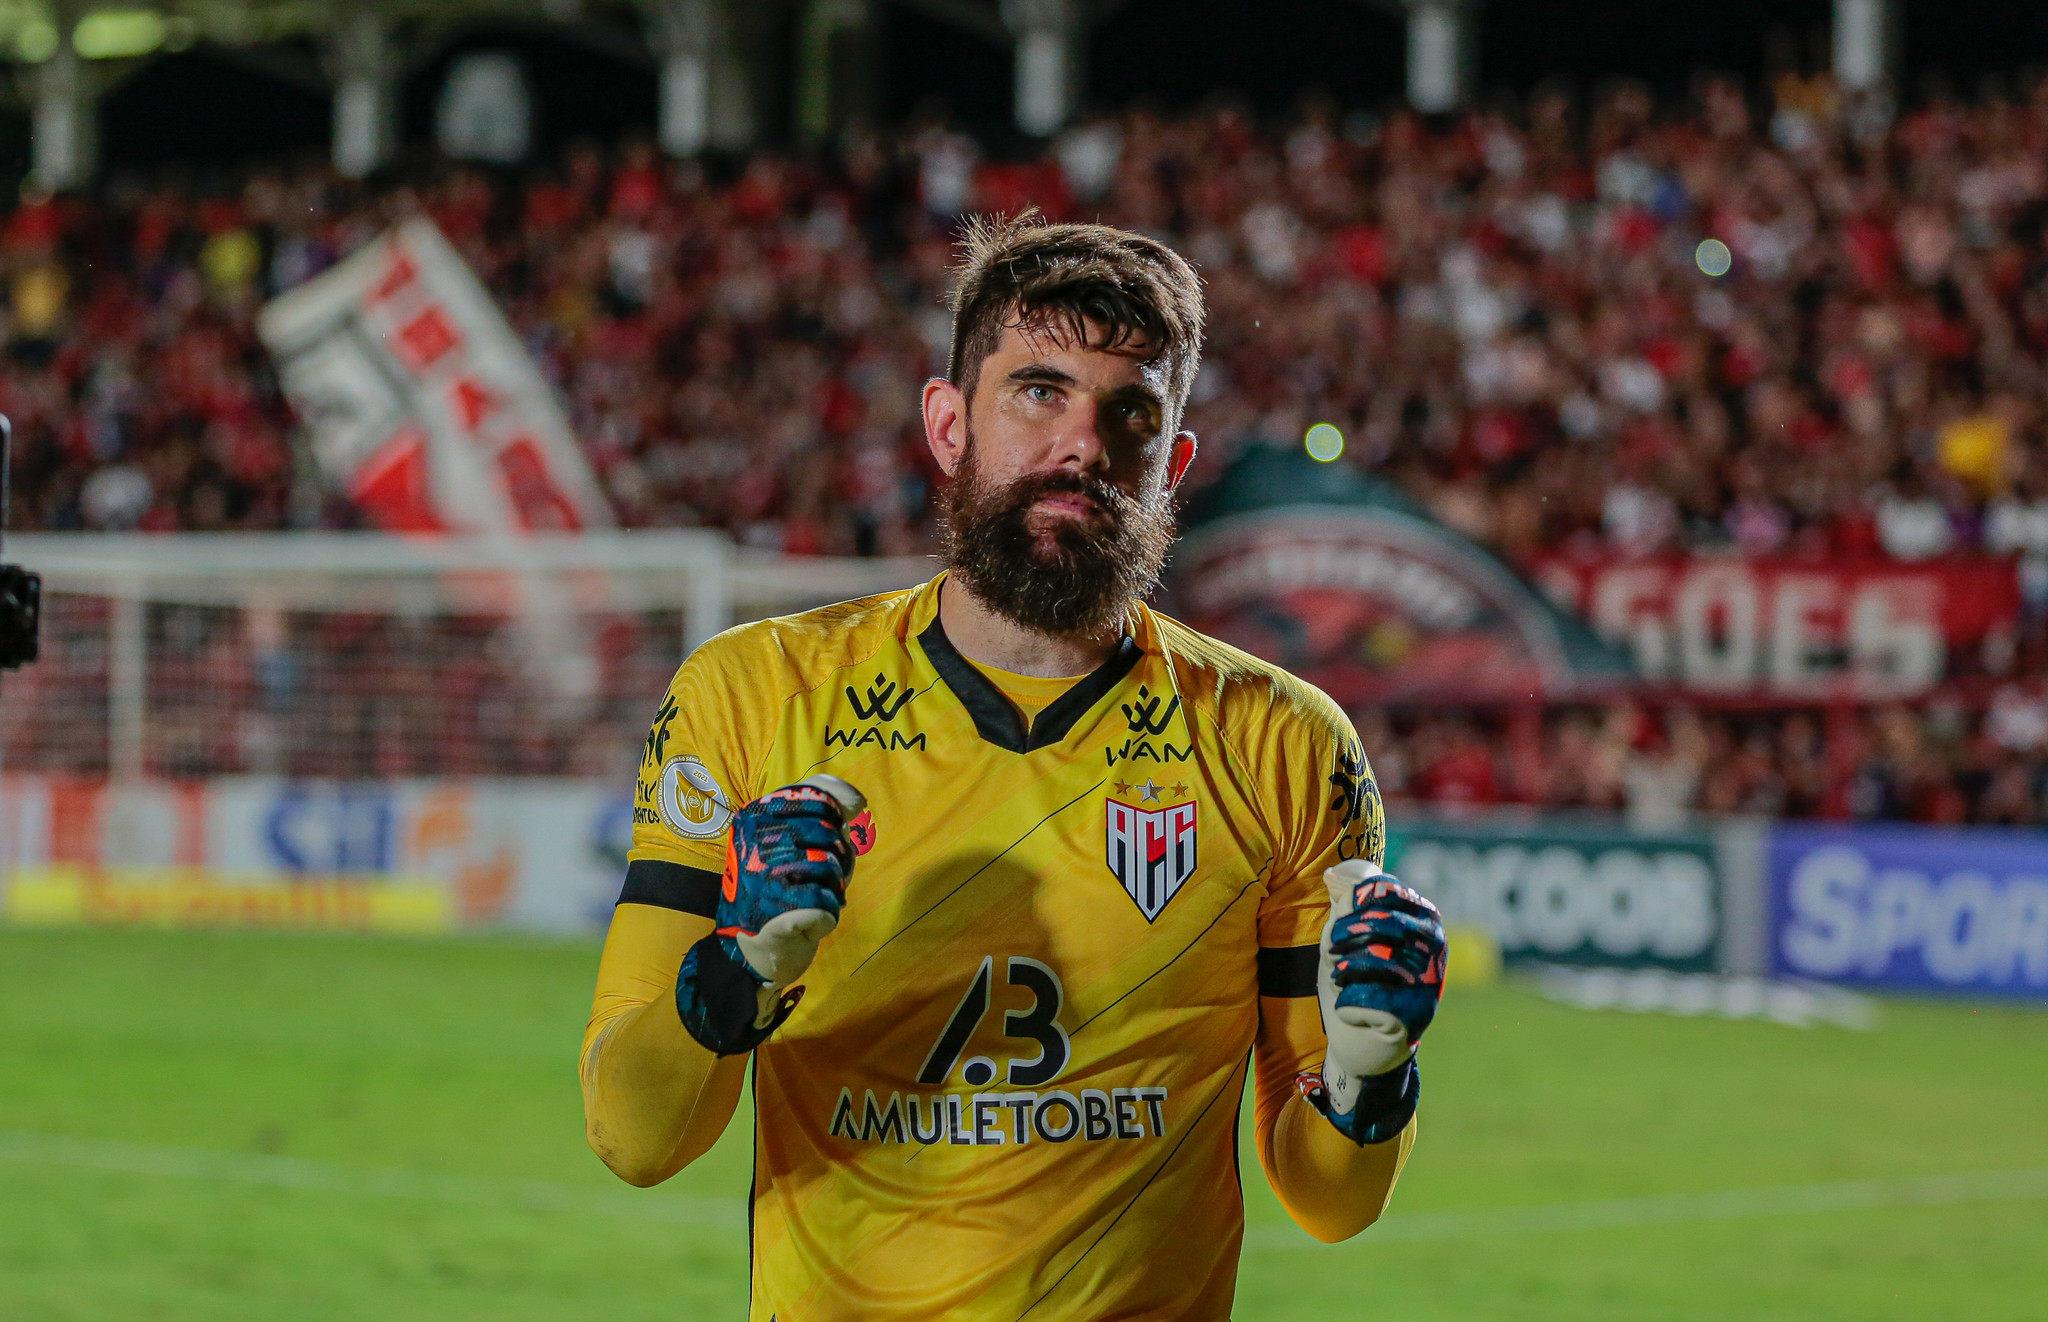 Fernando Miguel comemorando após vitória do Atlético